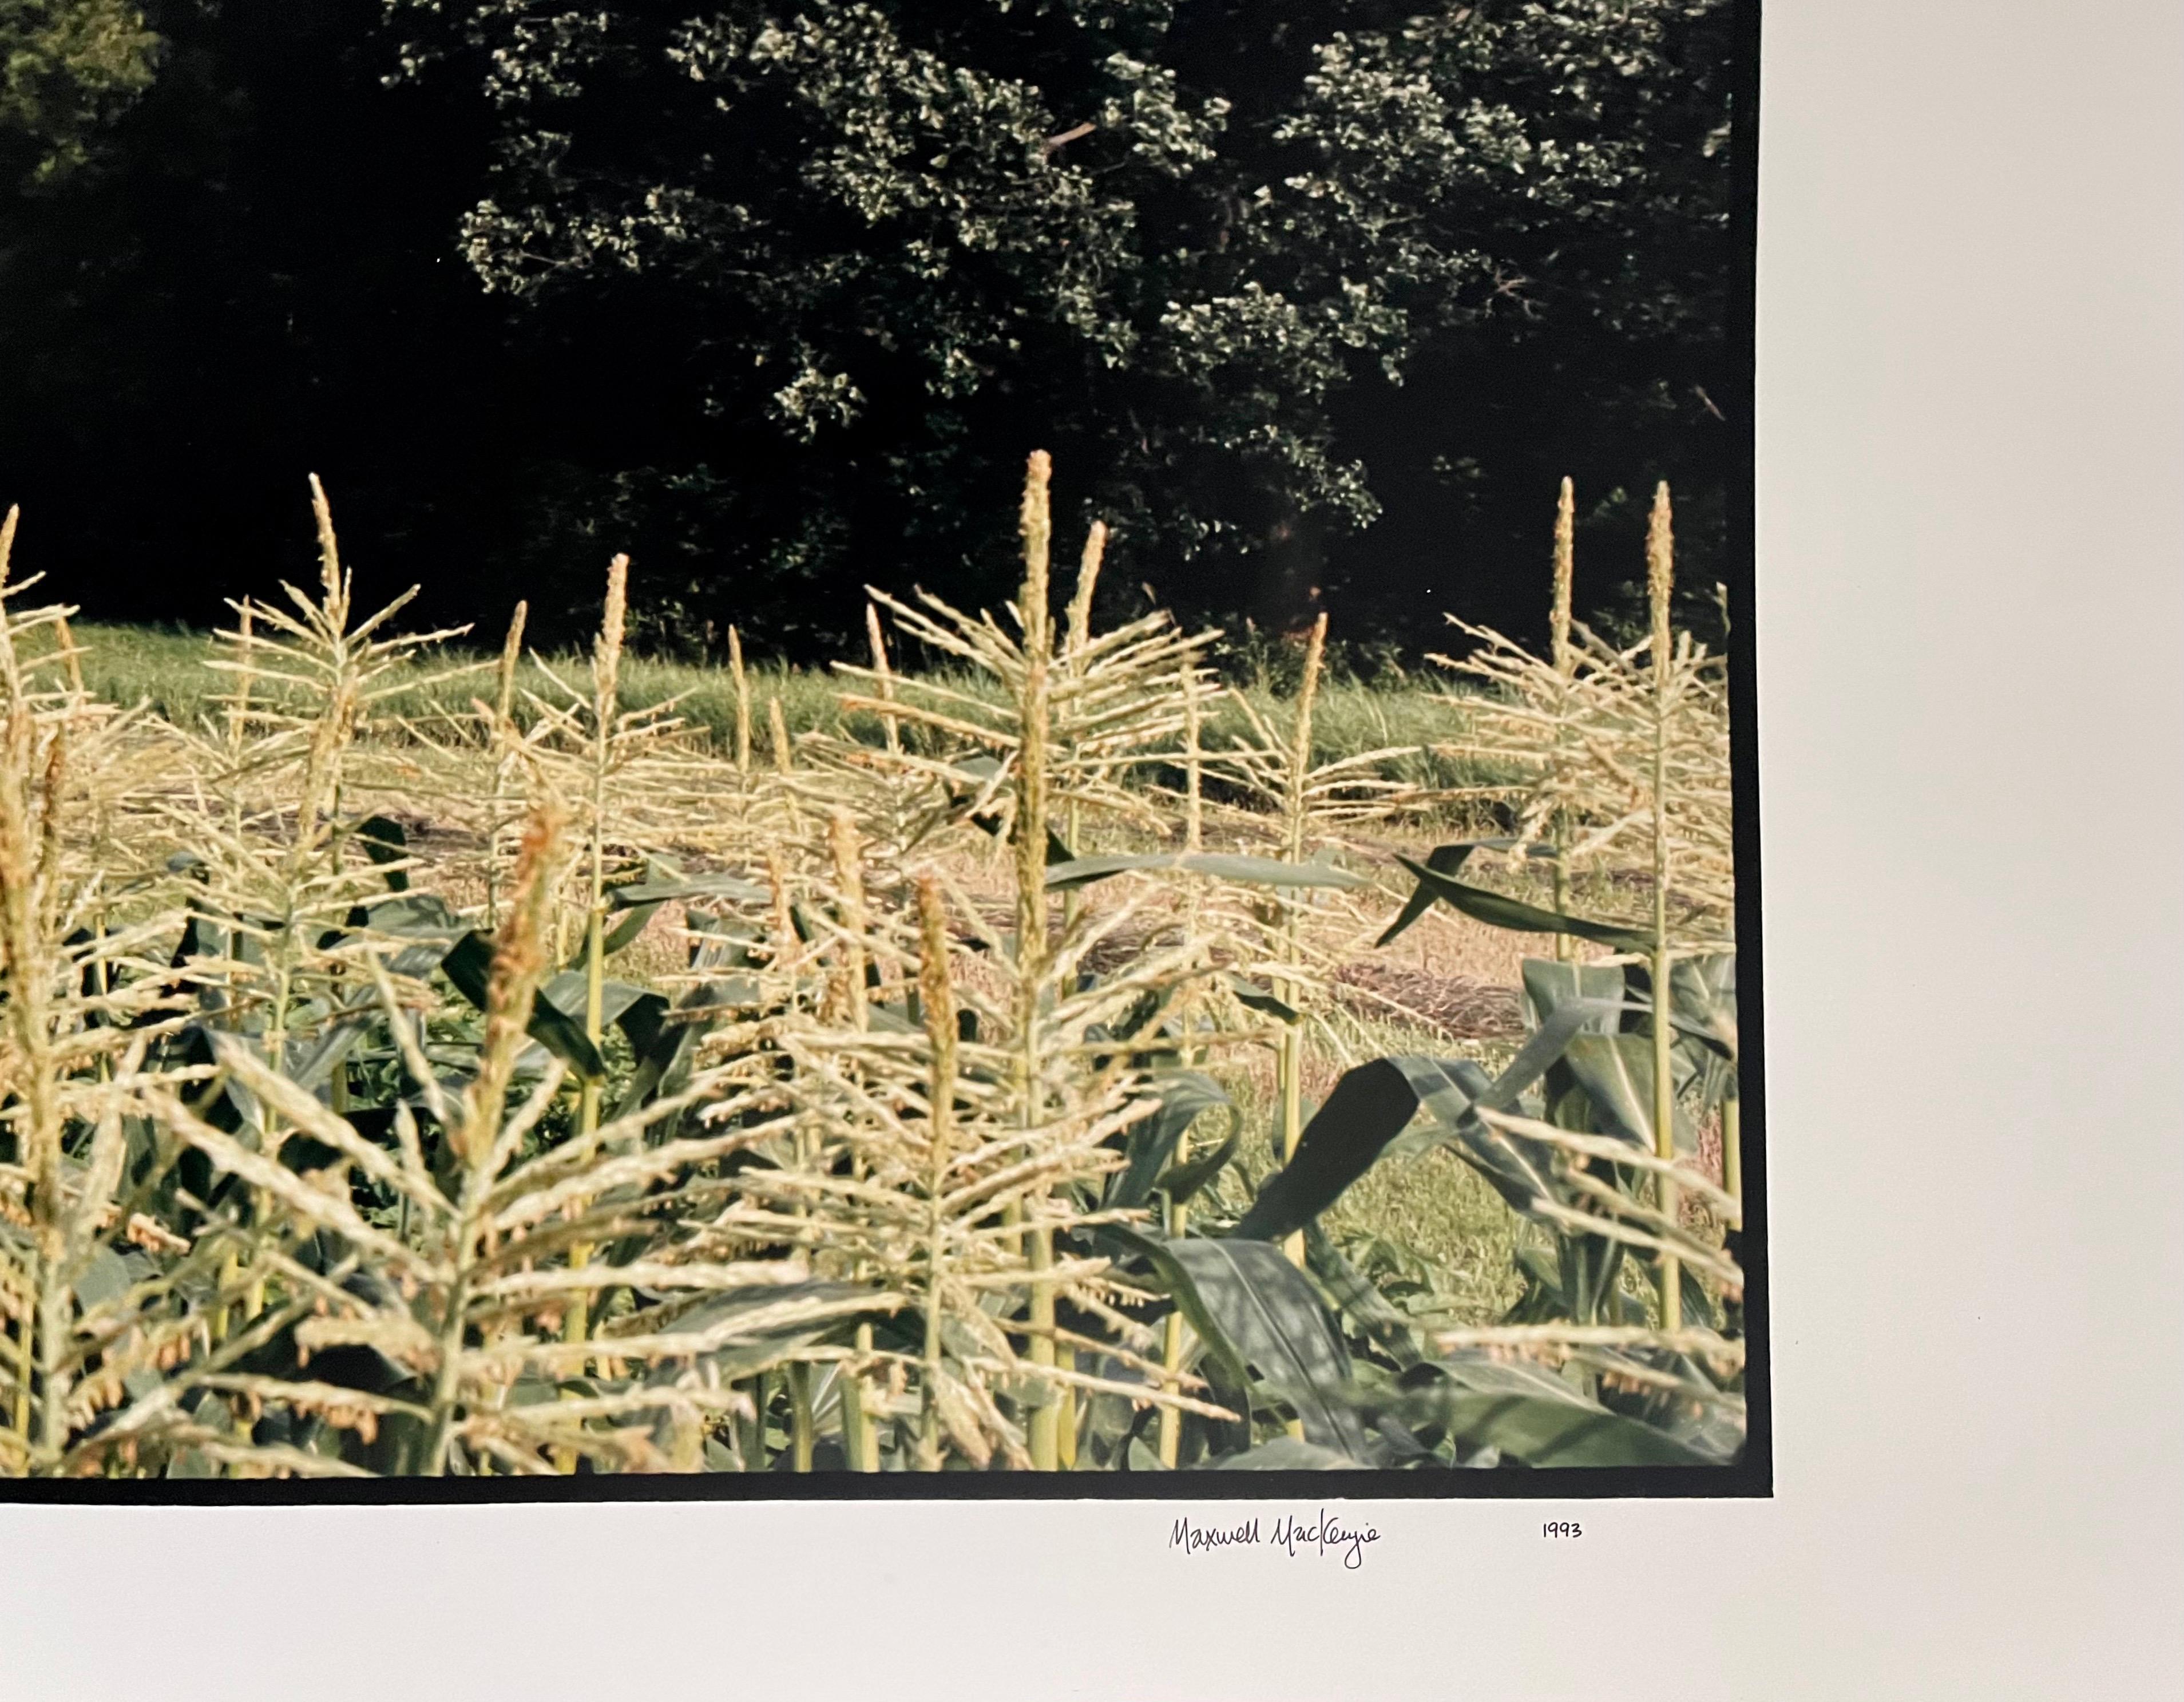 Maison de ferme ou hangar à tabac, été
Fabuleuse photographie de paysage américain d'une scène de paysage rural. 
d'une petite édition de 20 exemplaires signés à la main
Tirage chromogène grand format sur papier professionnel Kodak
Les feuilles font